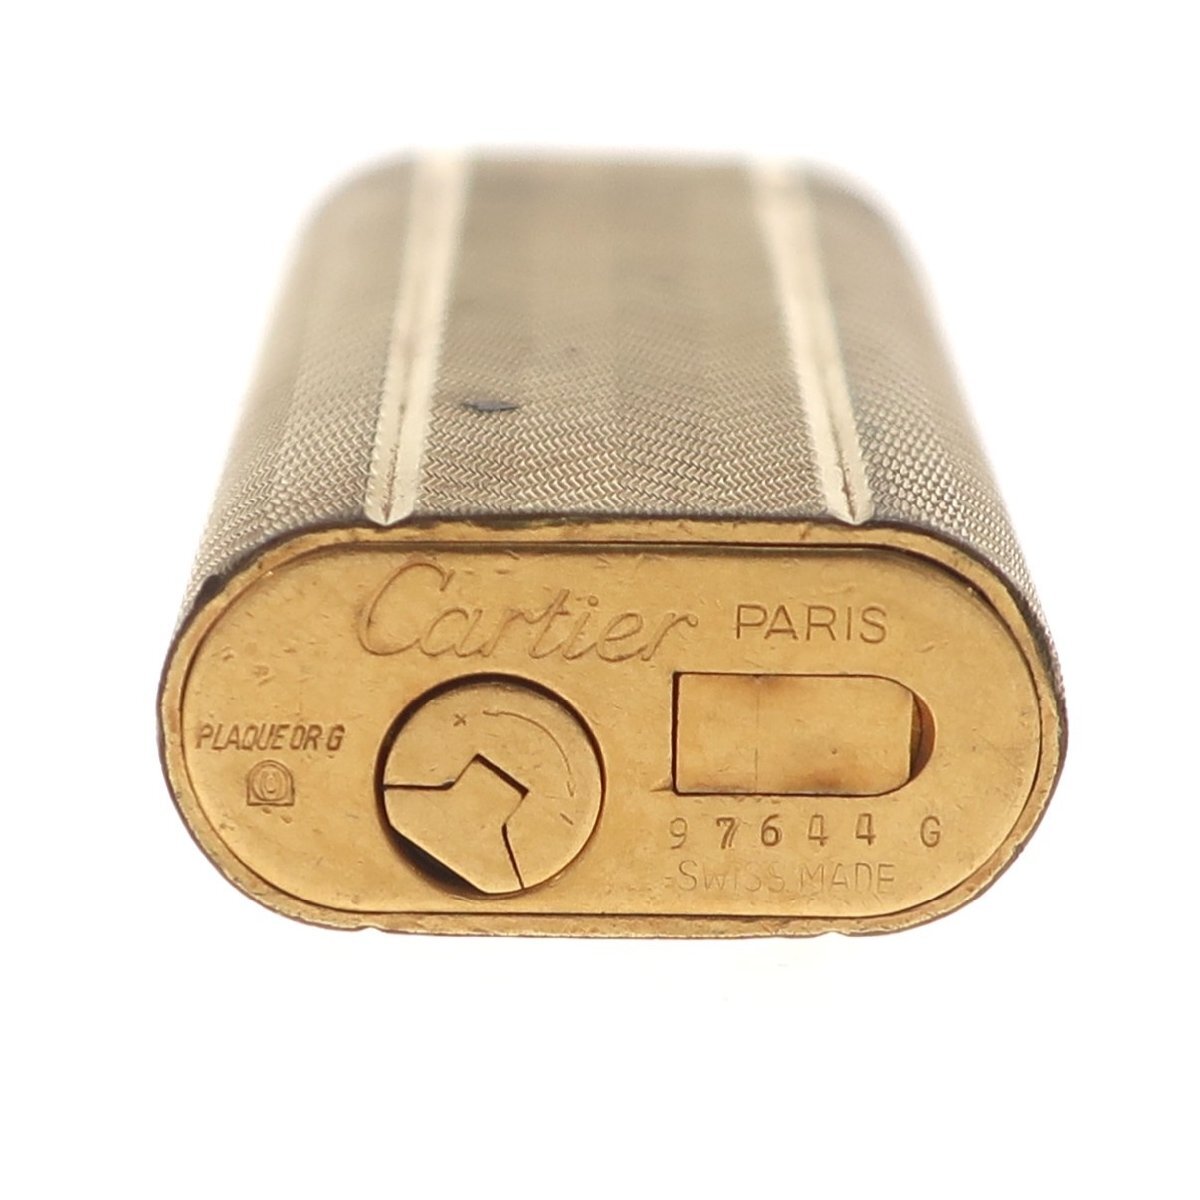 １円スタート Cartier カルティエ ローラー式 ガスライター オーバル ゴールドカラー 喫煙具 タバコ 煙草グッズ 着火未確認